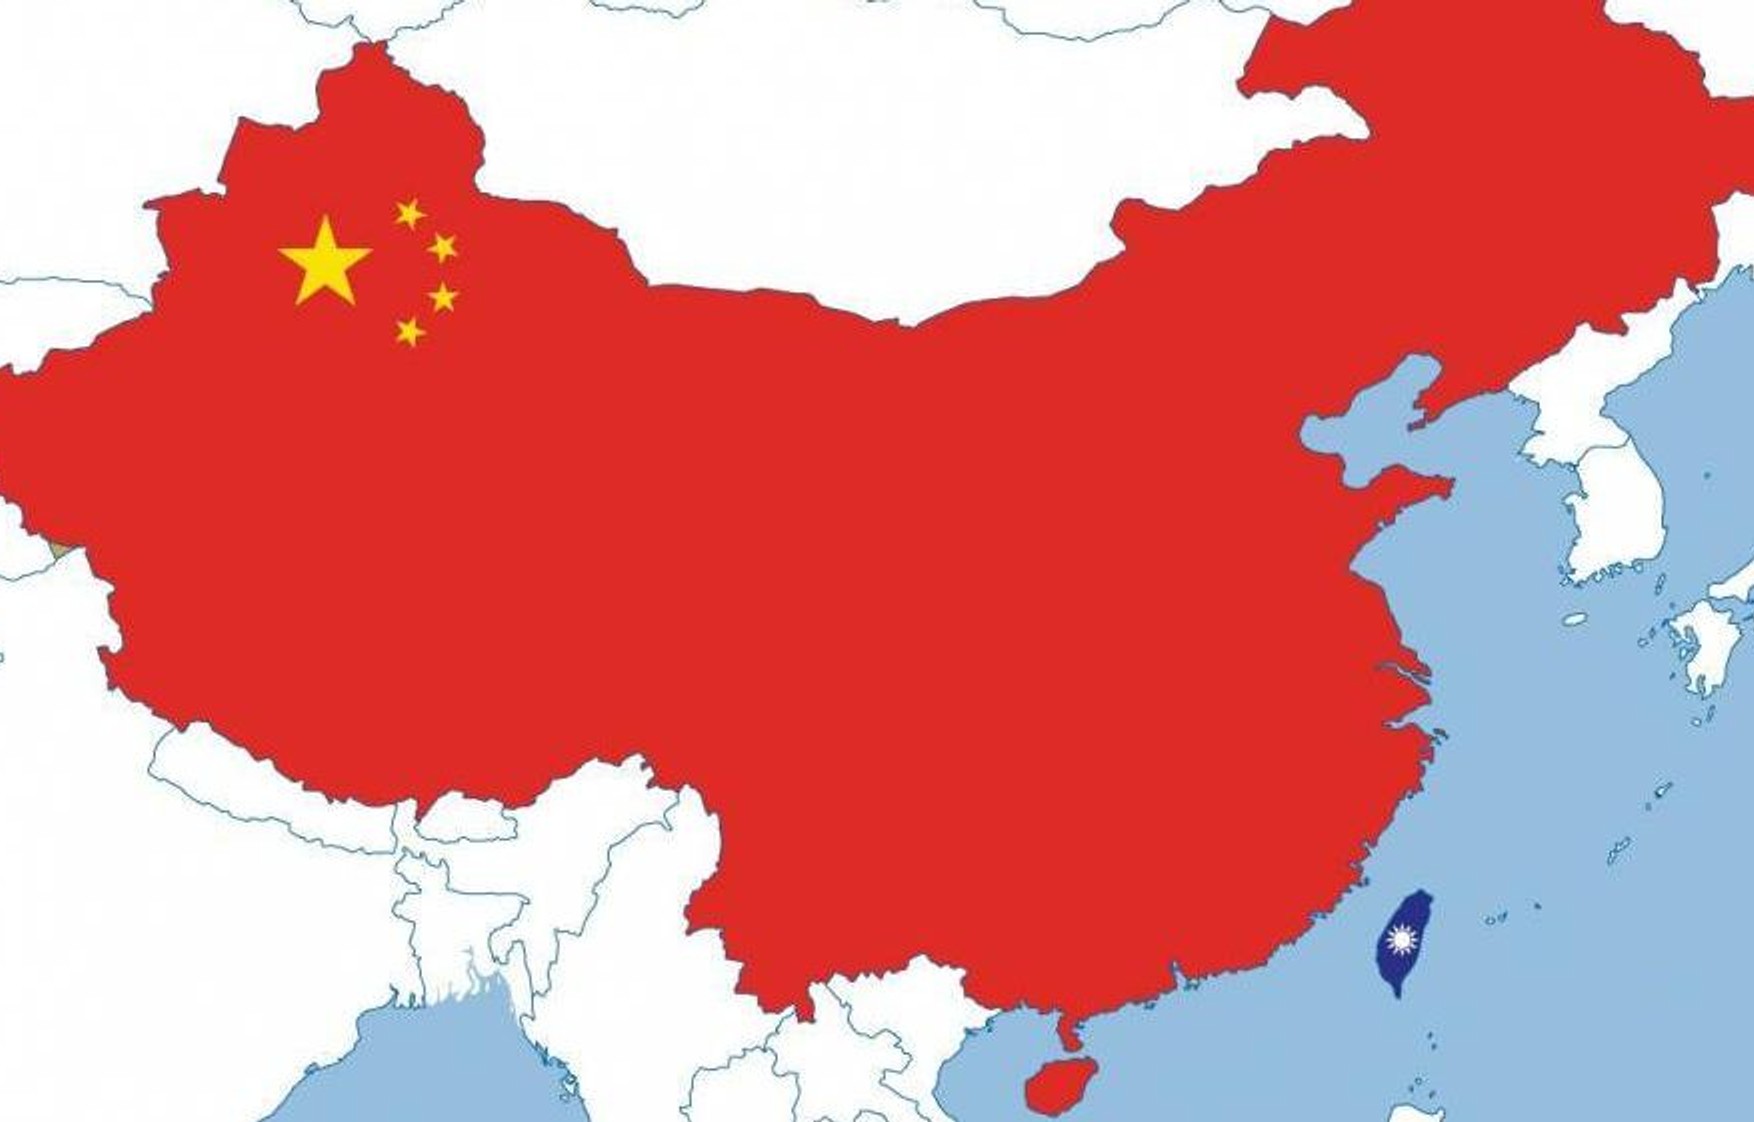 Китай проводит учения с боевой стрельбой рядом с Тайванем. В это время Пелоси вылетела в турне по Азии